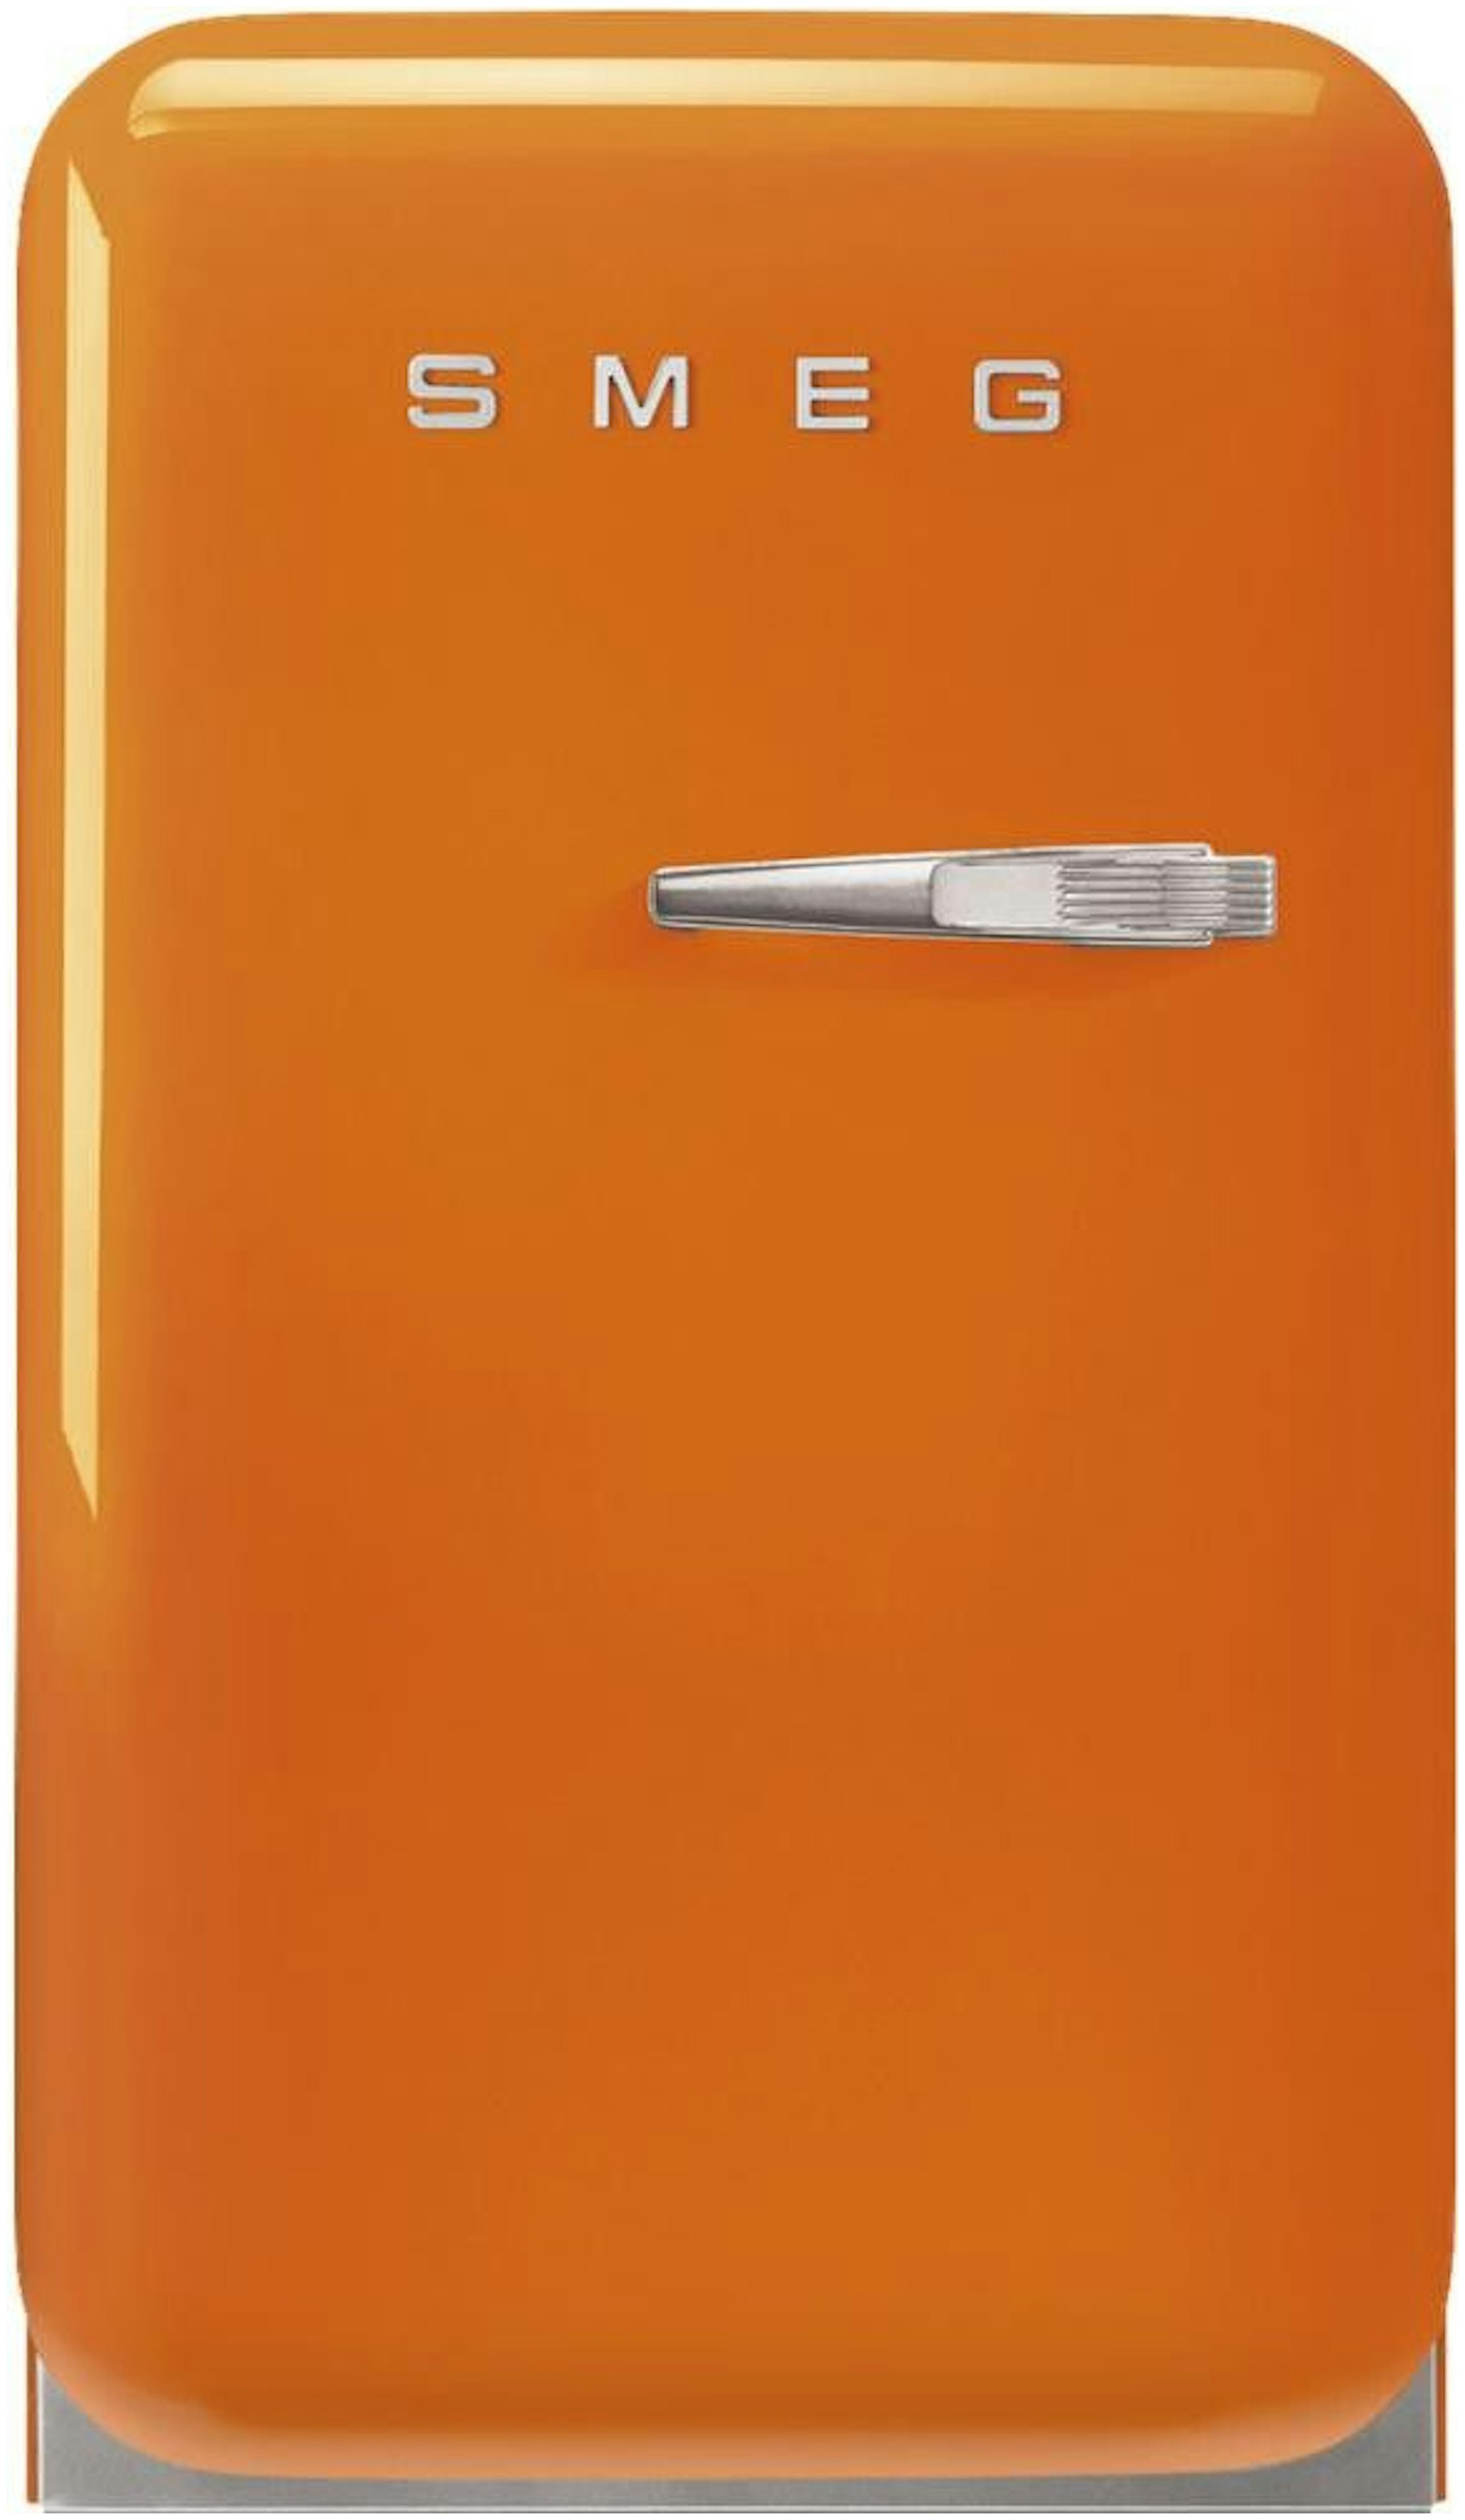 Haarvaten vraag naar Ruilhandel Oranje koelkast kopen? - Alle oranjekleurige koelkasten!